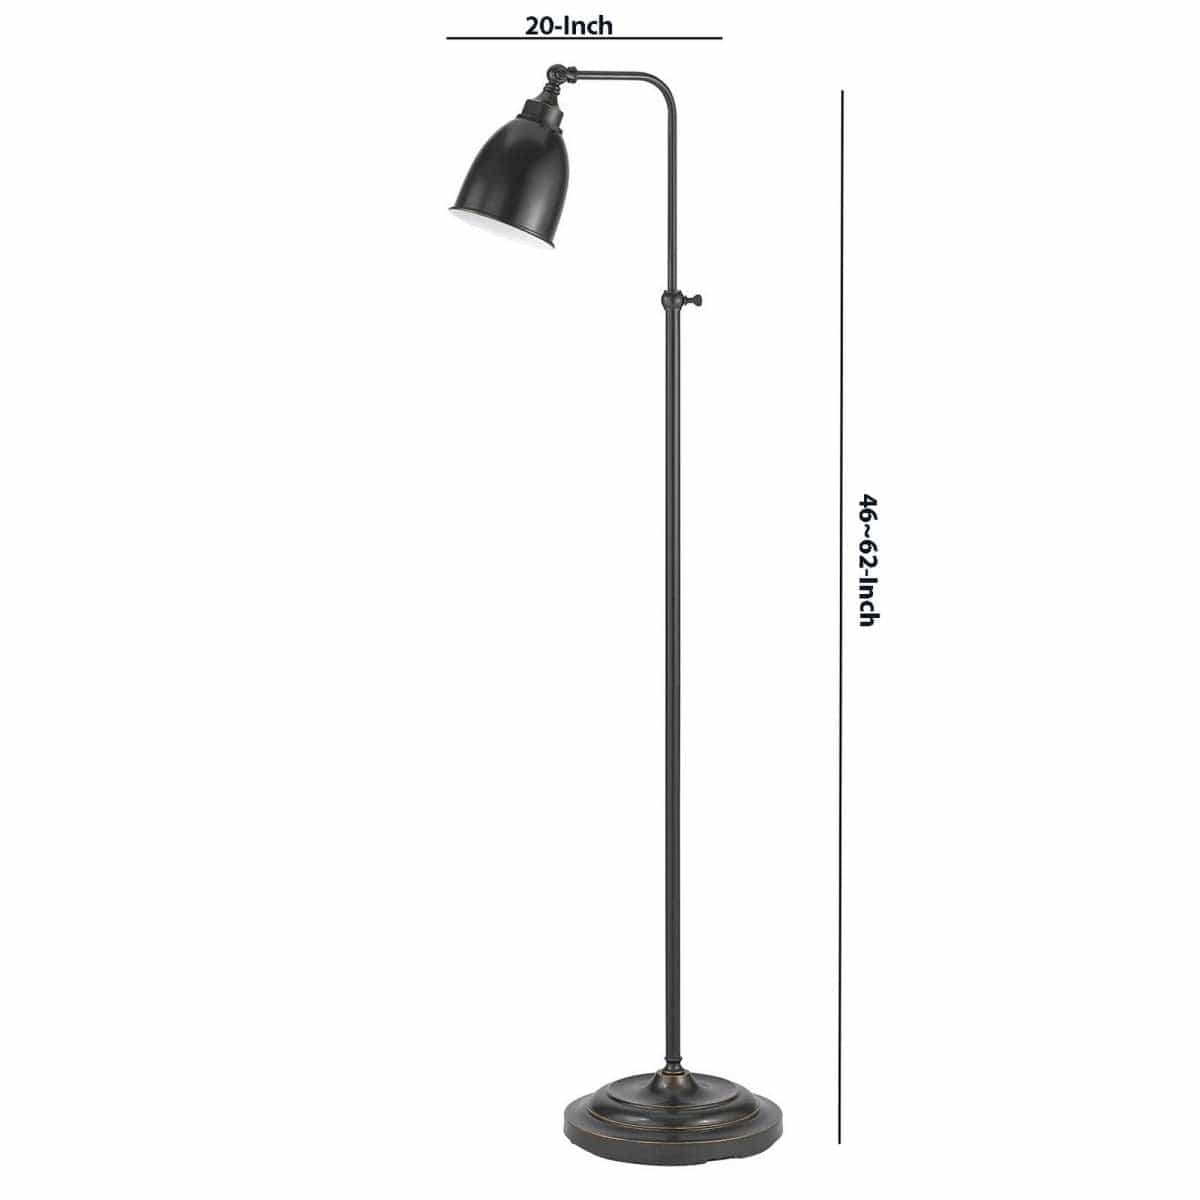 Benzara Metal Round 62" Floor Lamp With Adjustable Pole, Dark Bronze By Benzara Floor Lamps BM225100